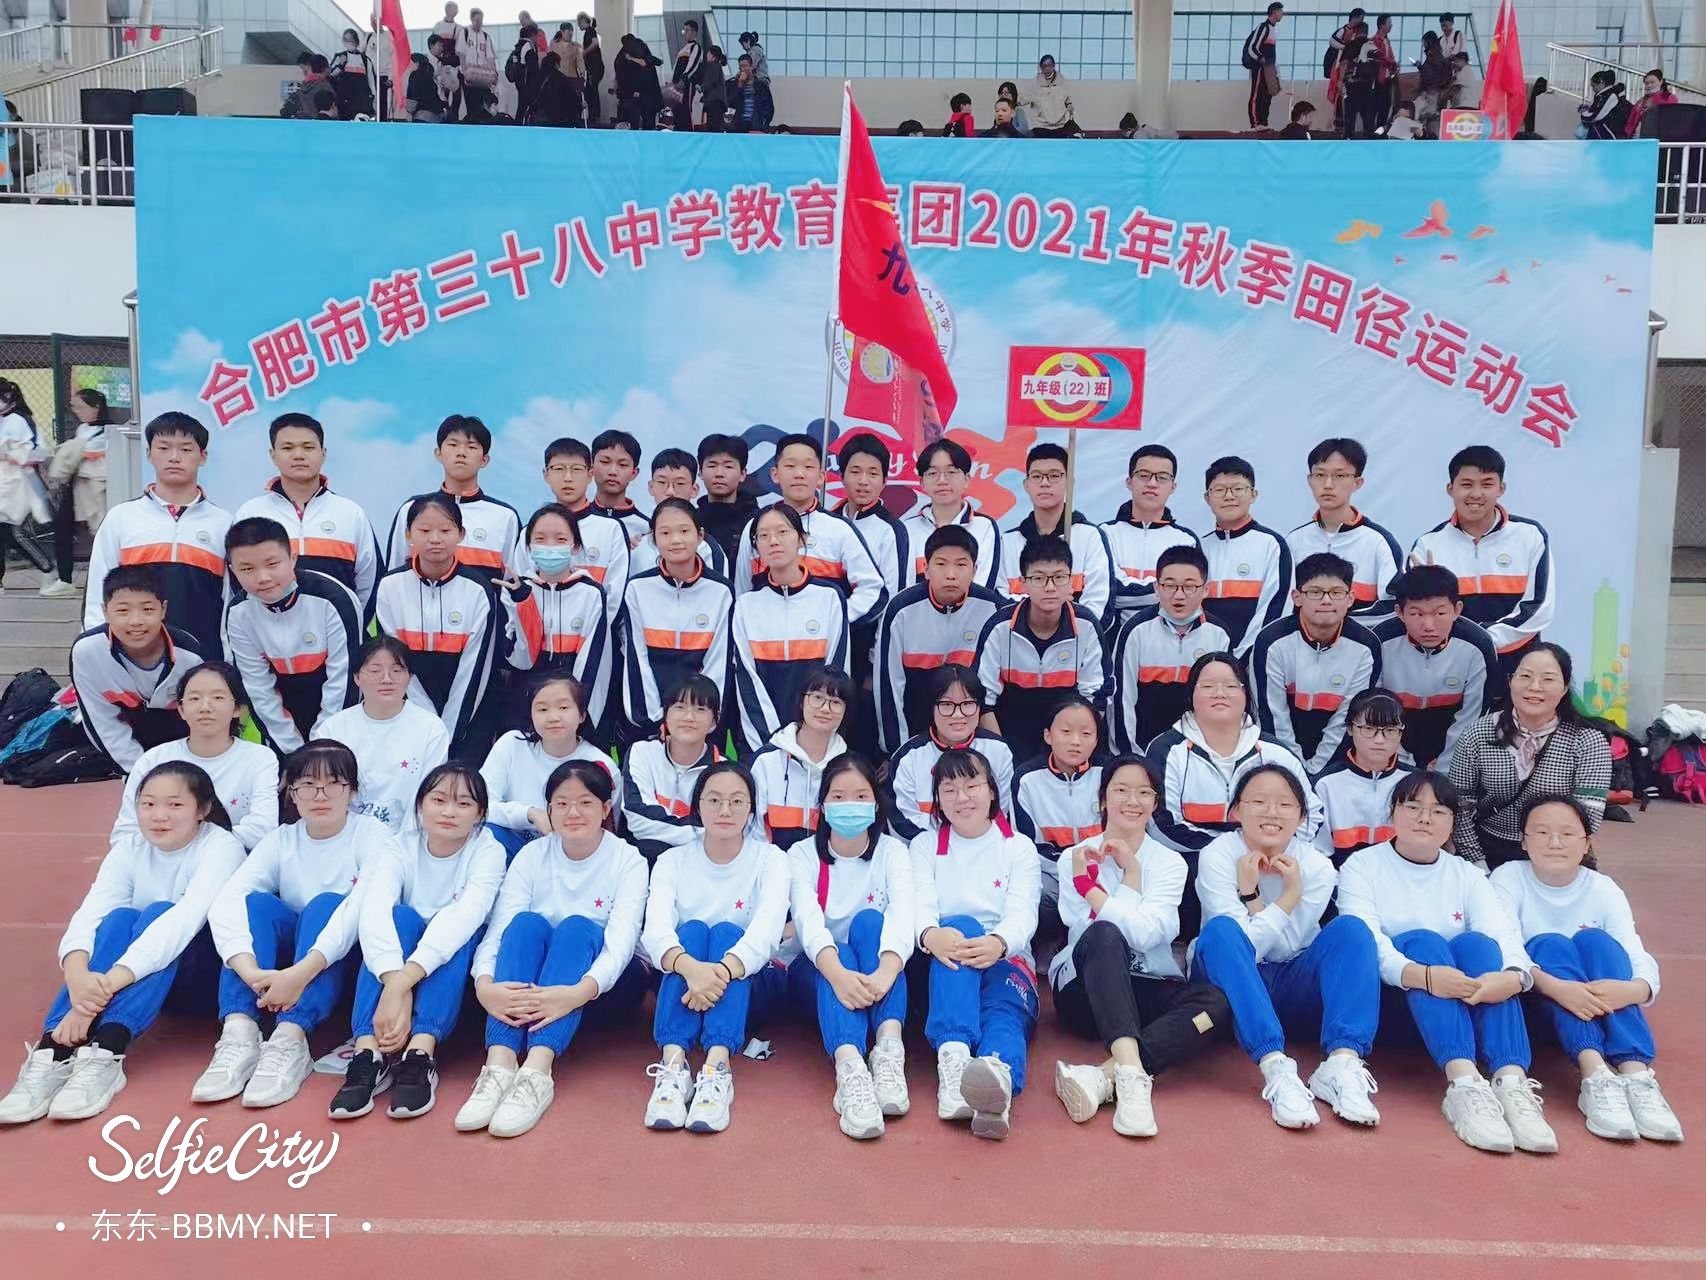 金东浩成长日记在38中学的最后一届校运会照片SelfieCity_20211112101157_org.jpg